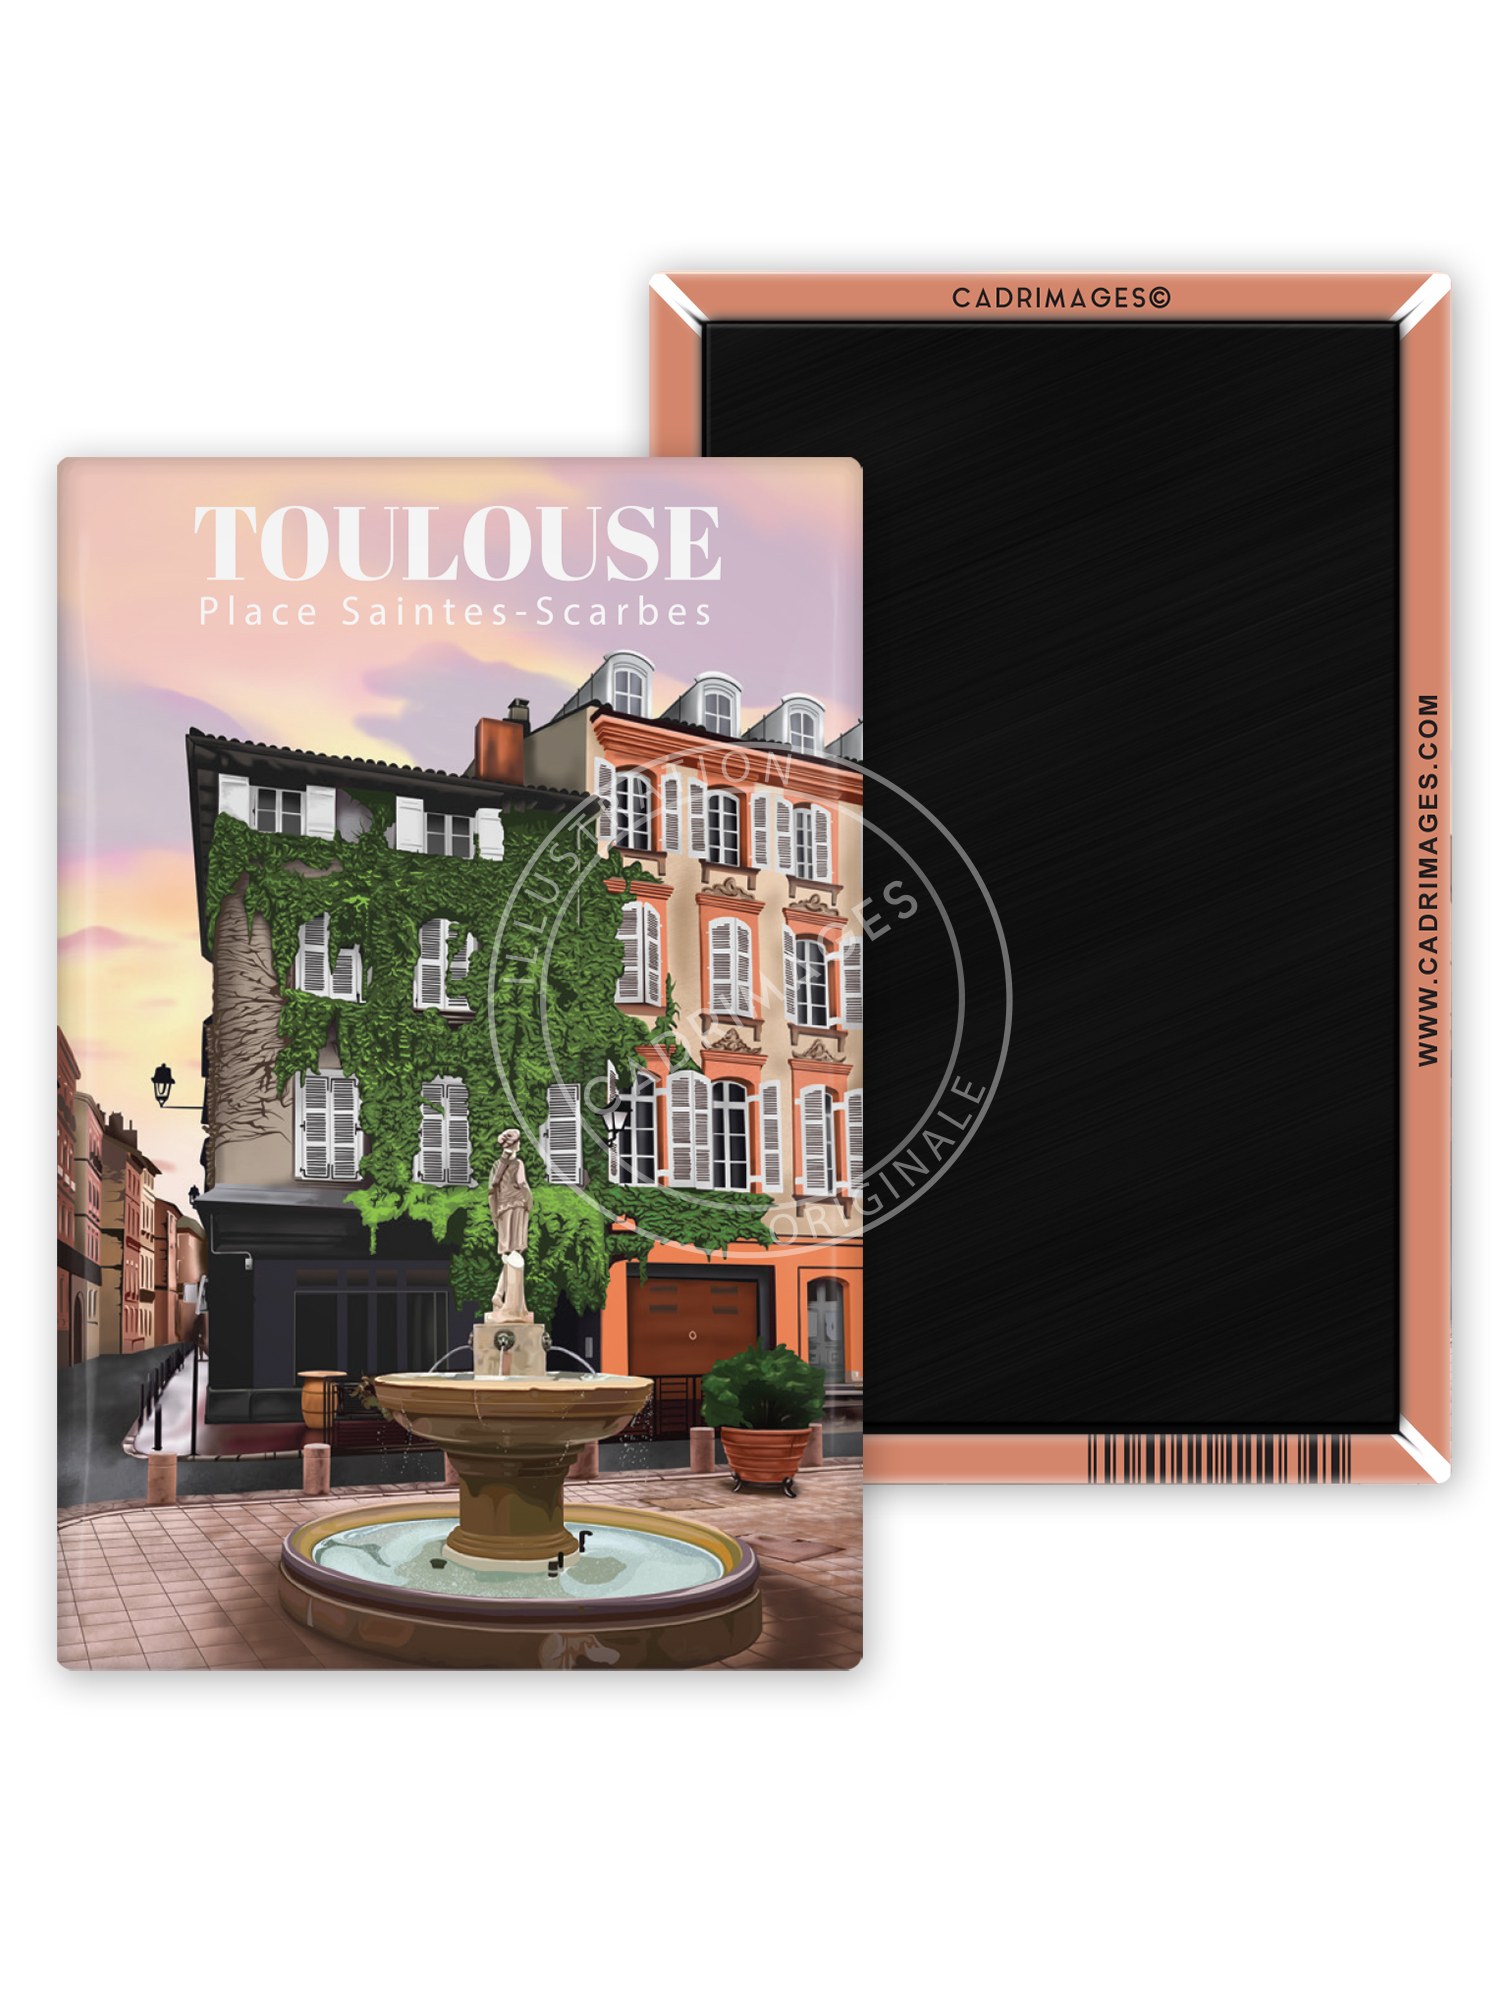 Magnet de Toulouse, Saintes Scarbes rose